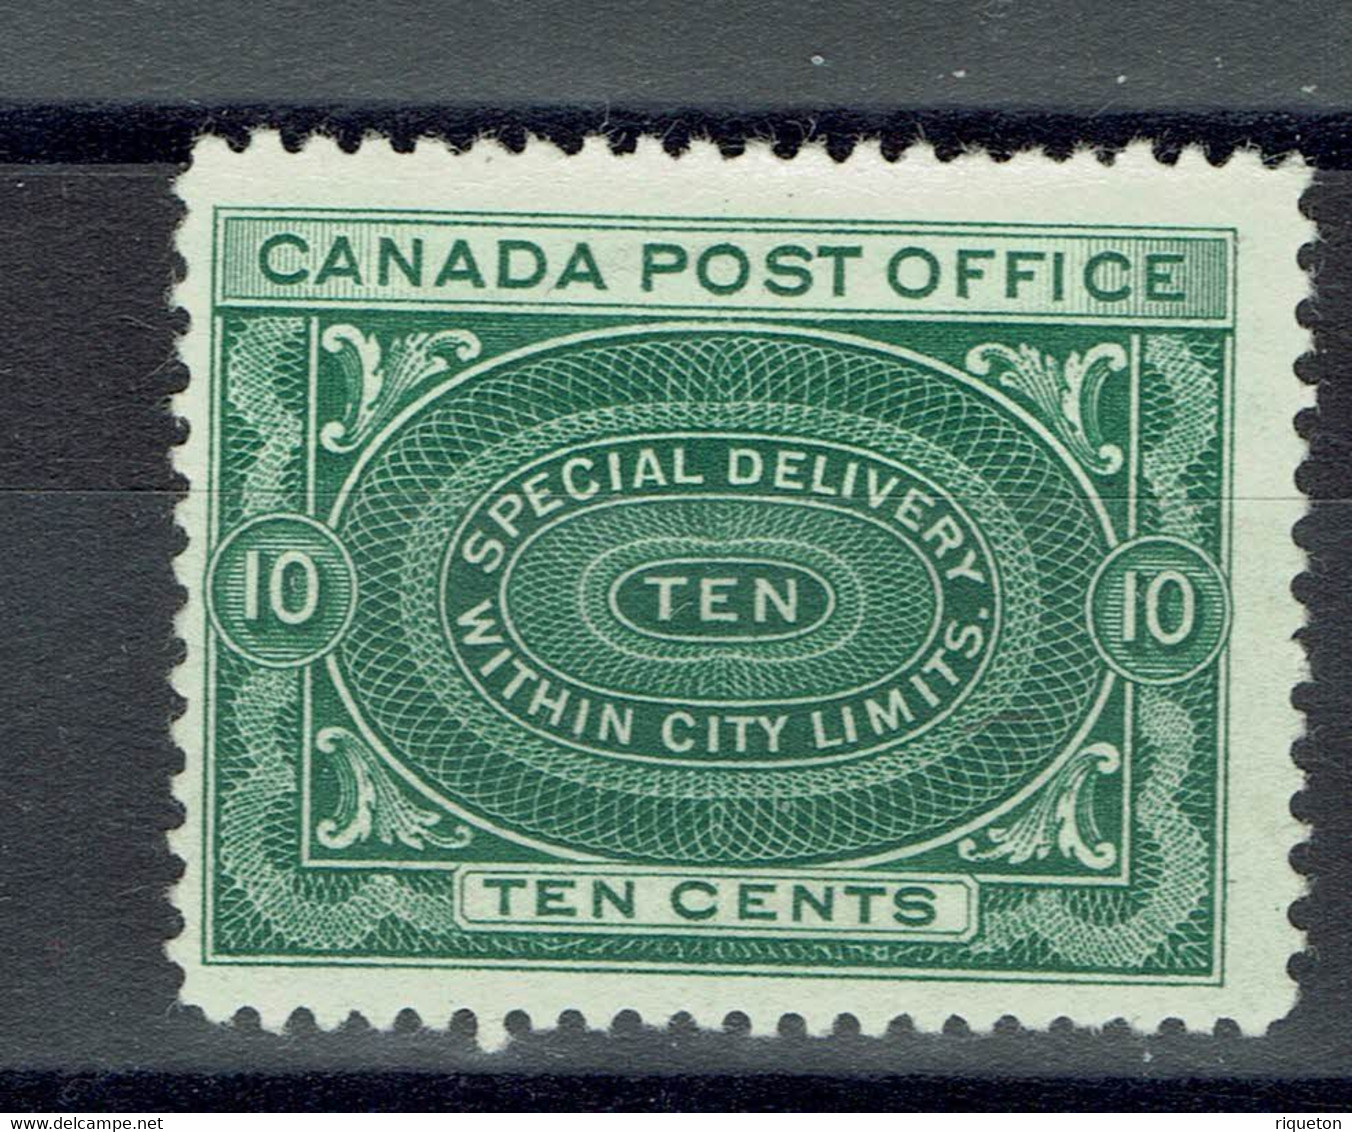 Canada - 1898-1920- Réf Yvert 2020 - Timbre Pour Lettres Par Exprès N° 1 - Neuf X - - Express